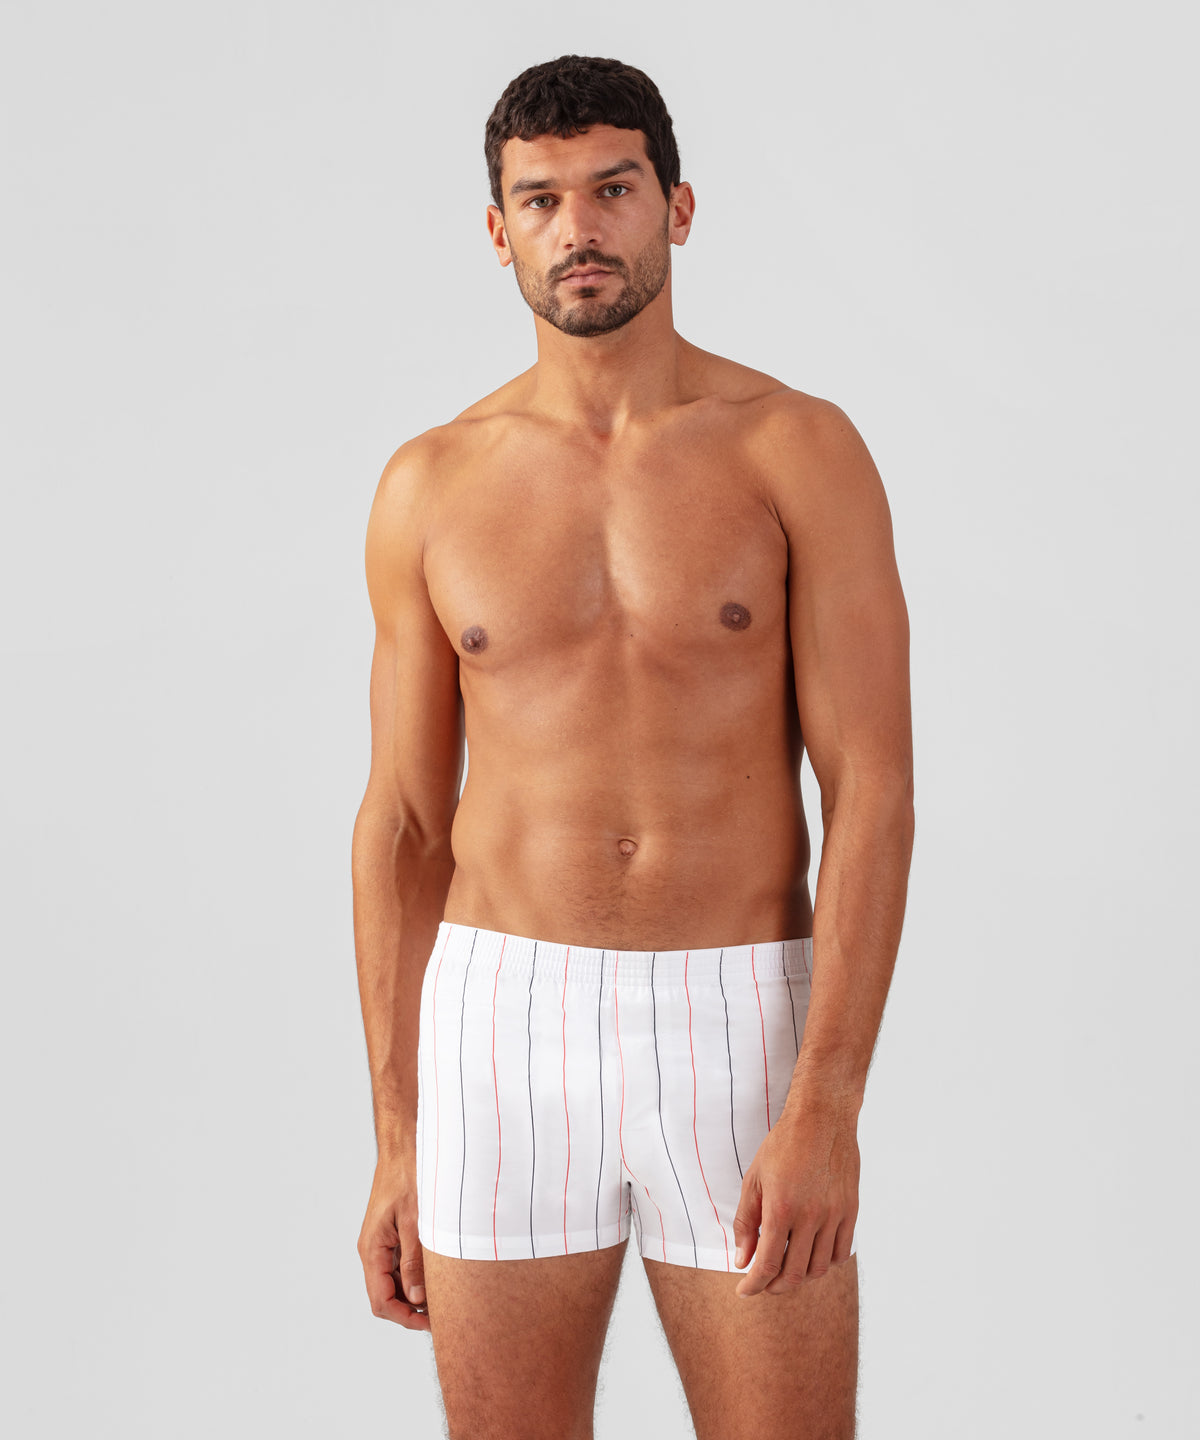 Buy Men's White Boxer Briefs, White Boxer Shorts